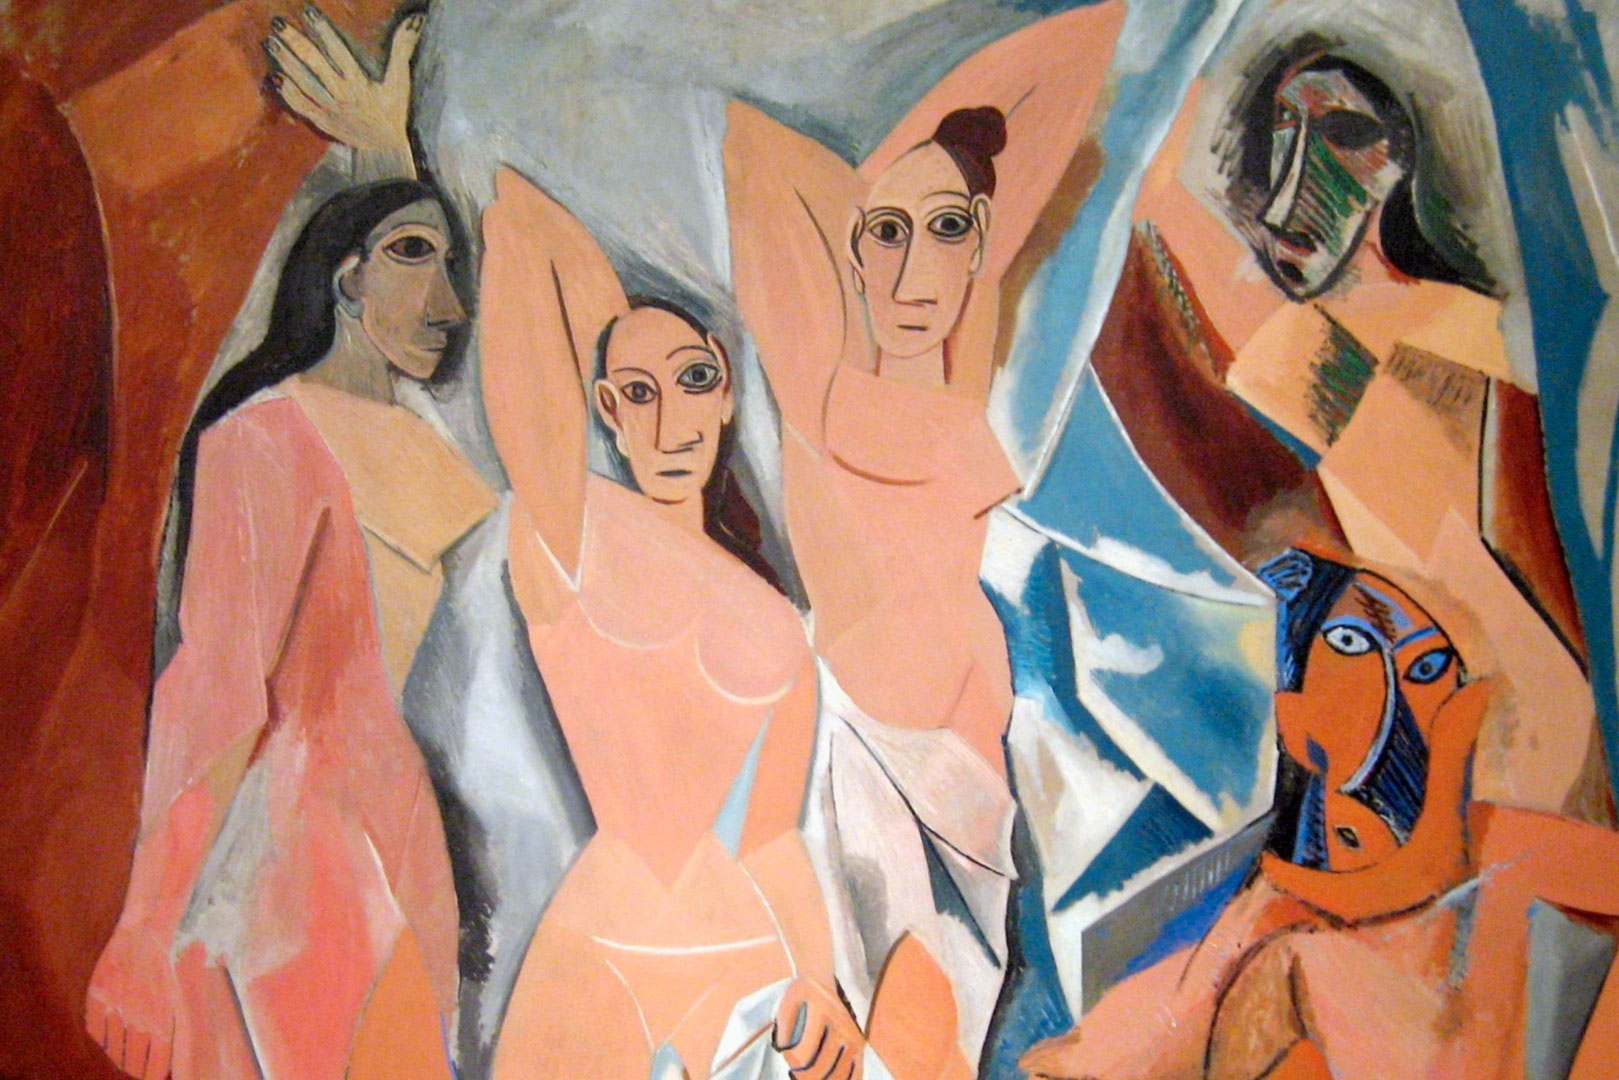 Les Demoiselles d’Avignon - Picasso